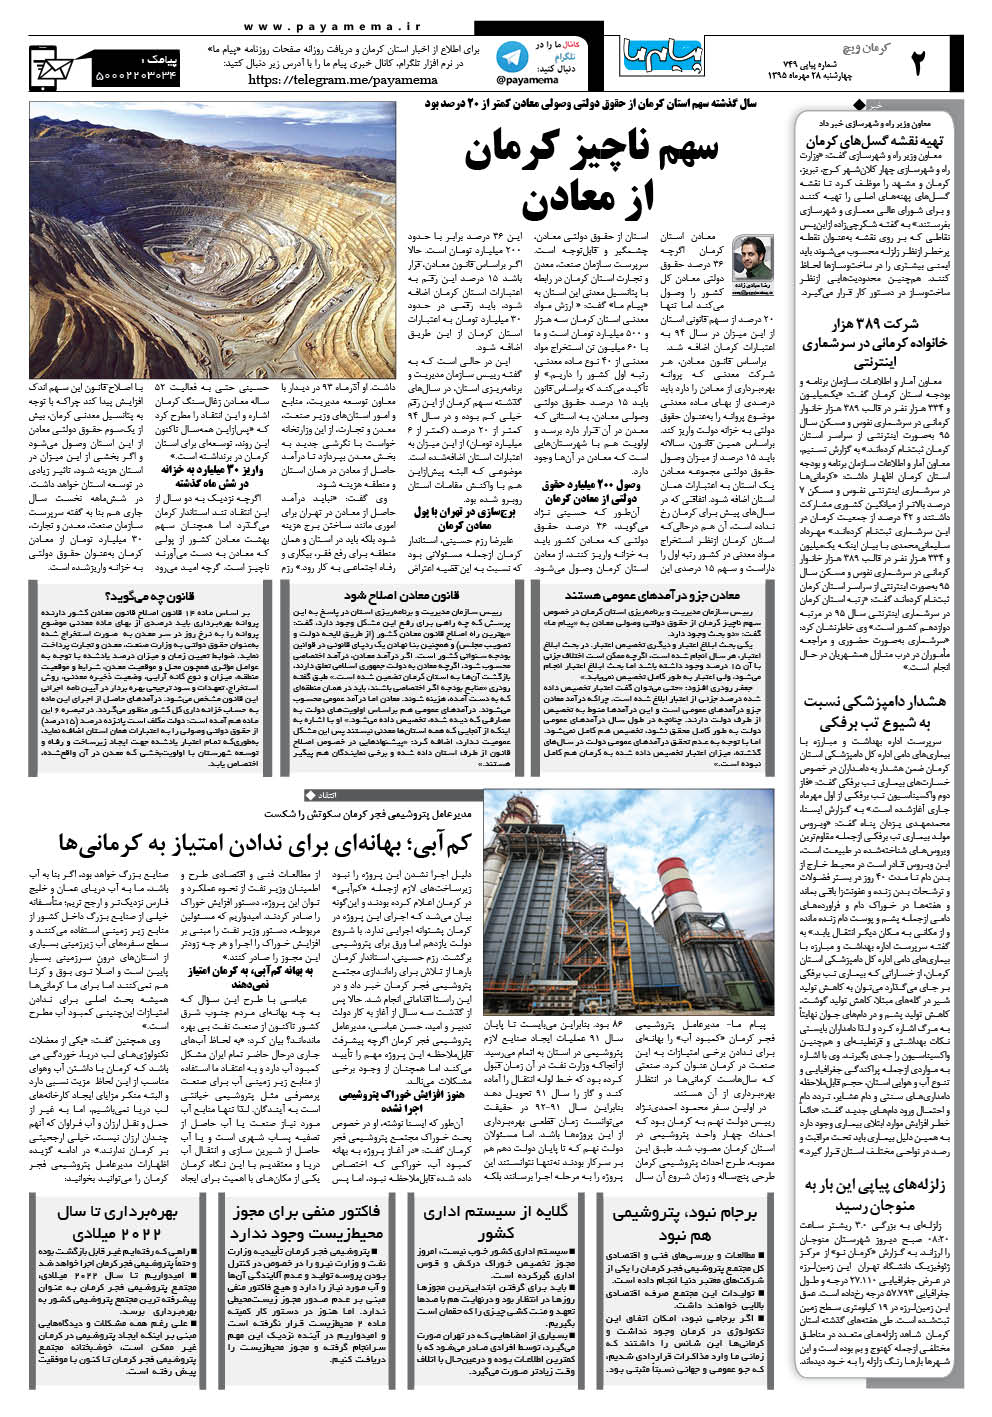 صفحه کرمان ویچ شماره 749 روزنامه پیام ما